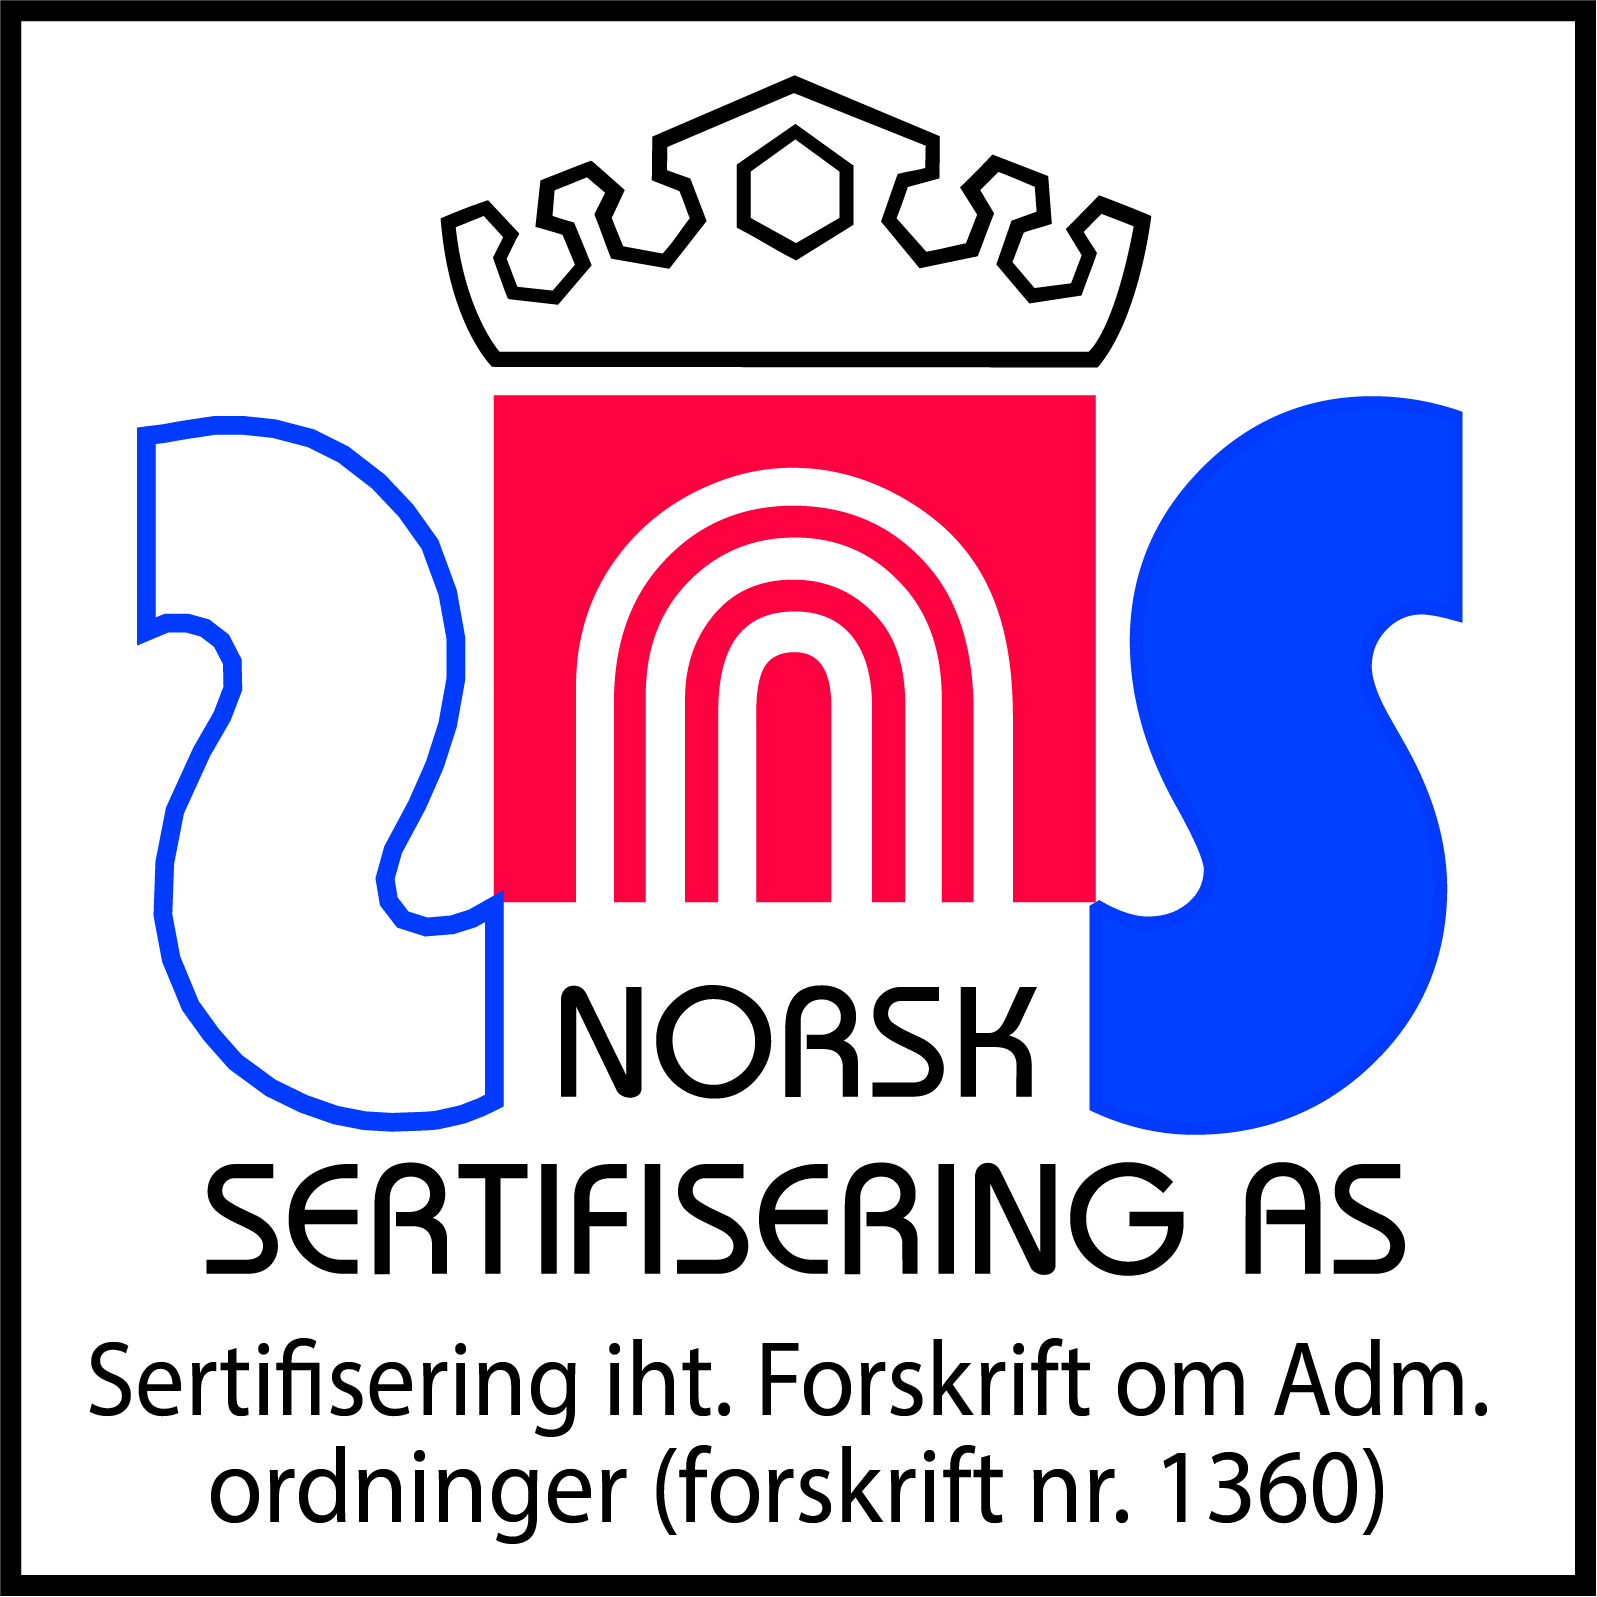 Norsk Sertifisering AS